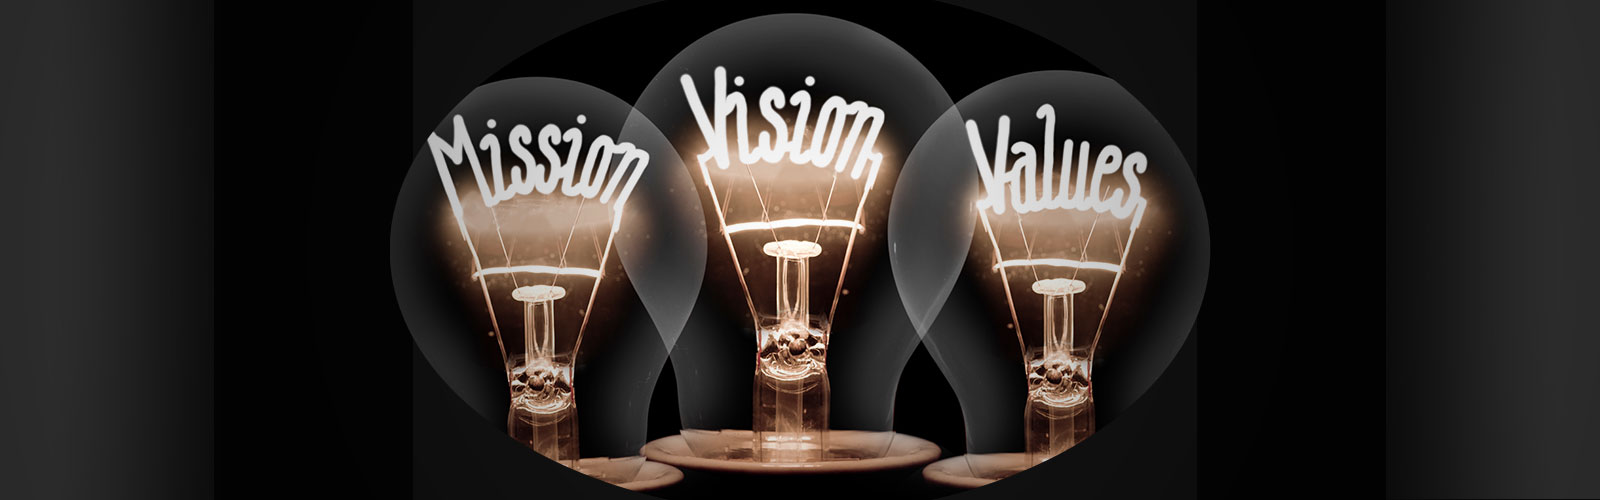 Mission-Vision-Values_Banner.jpg